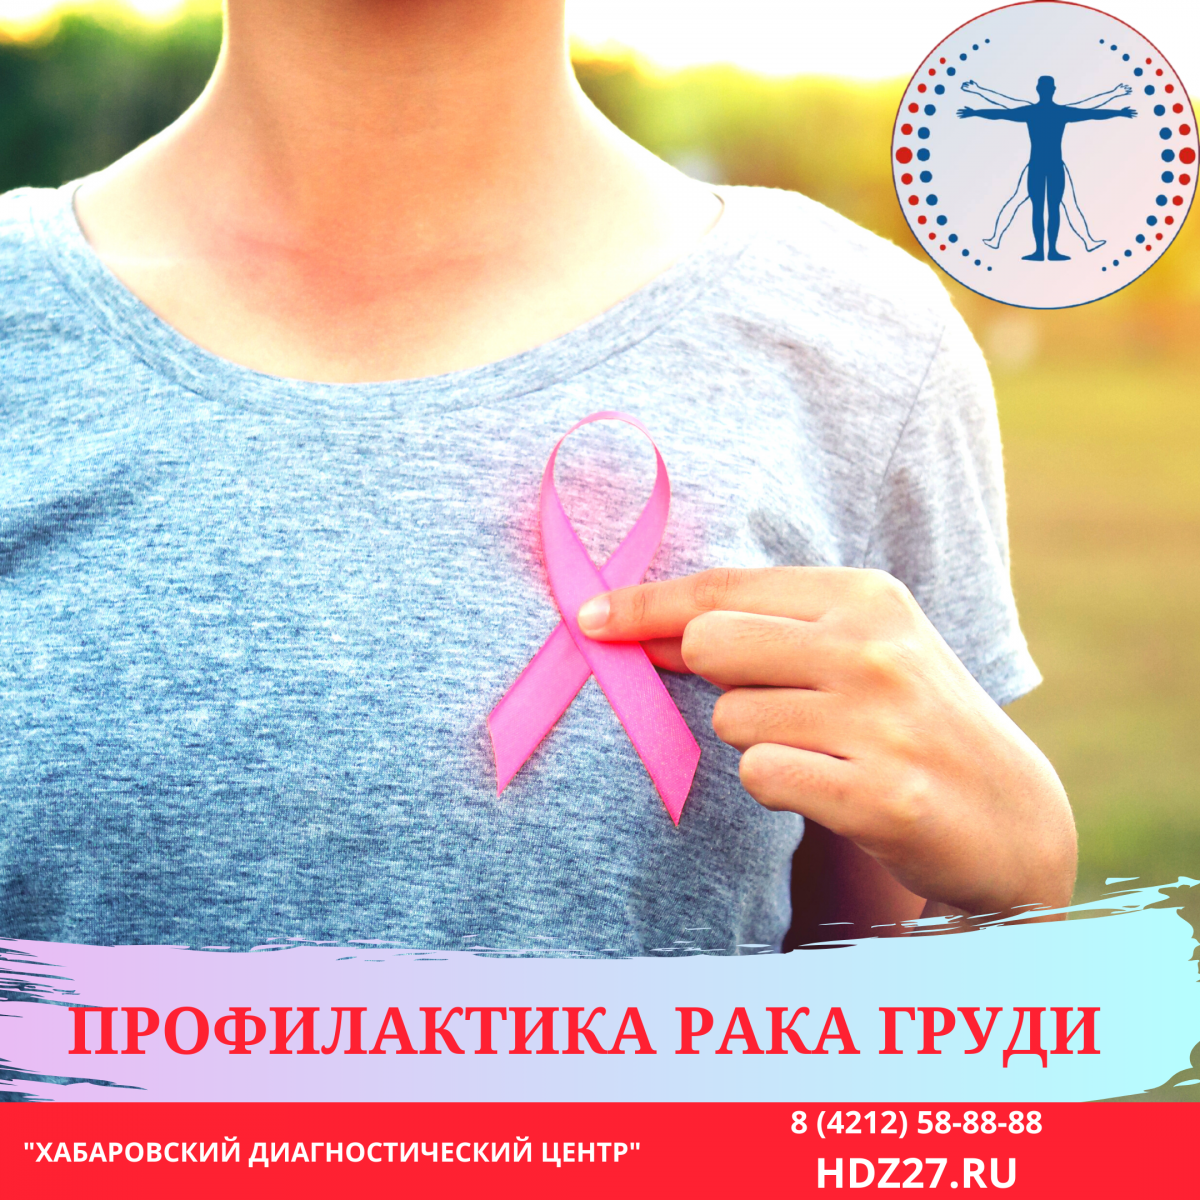 Профилактика и лечение рака груди в Хабаровске